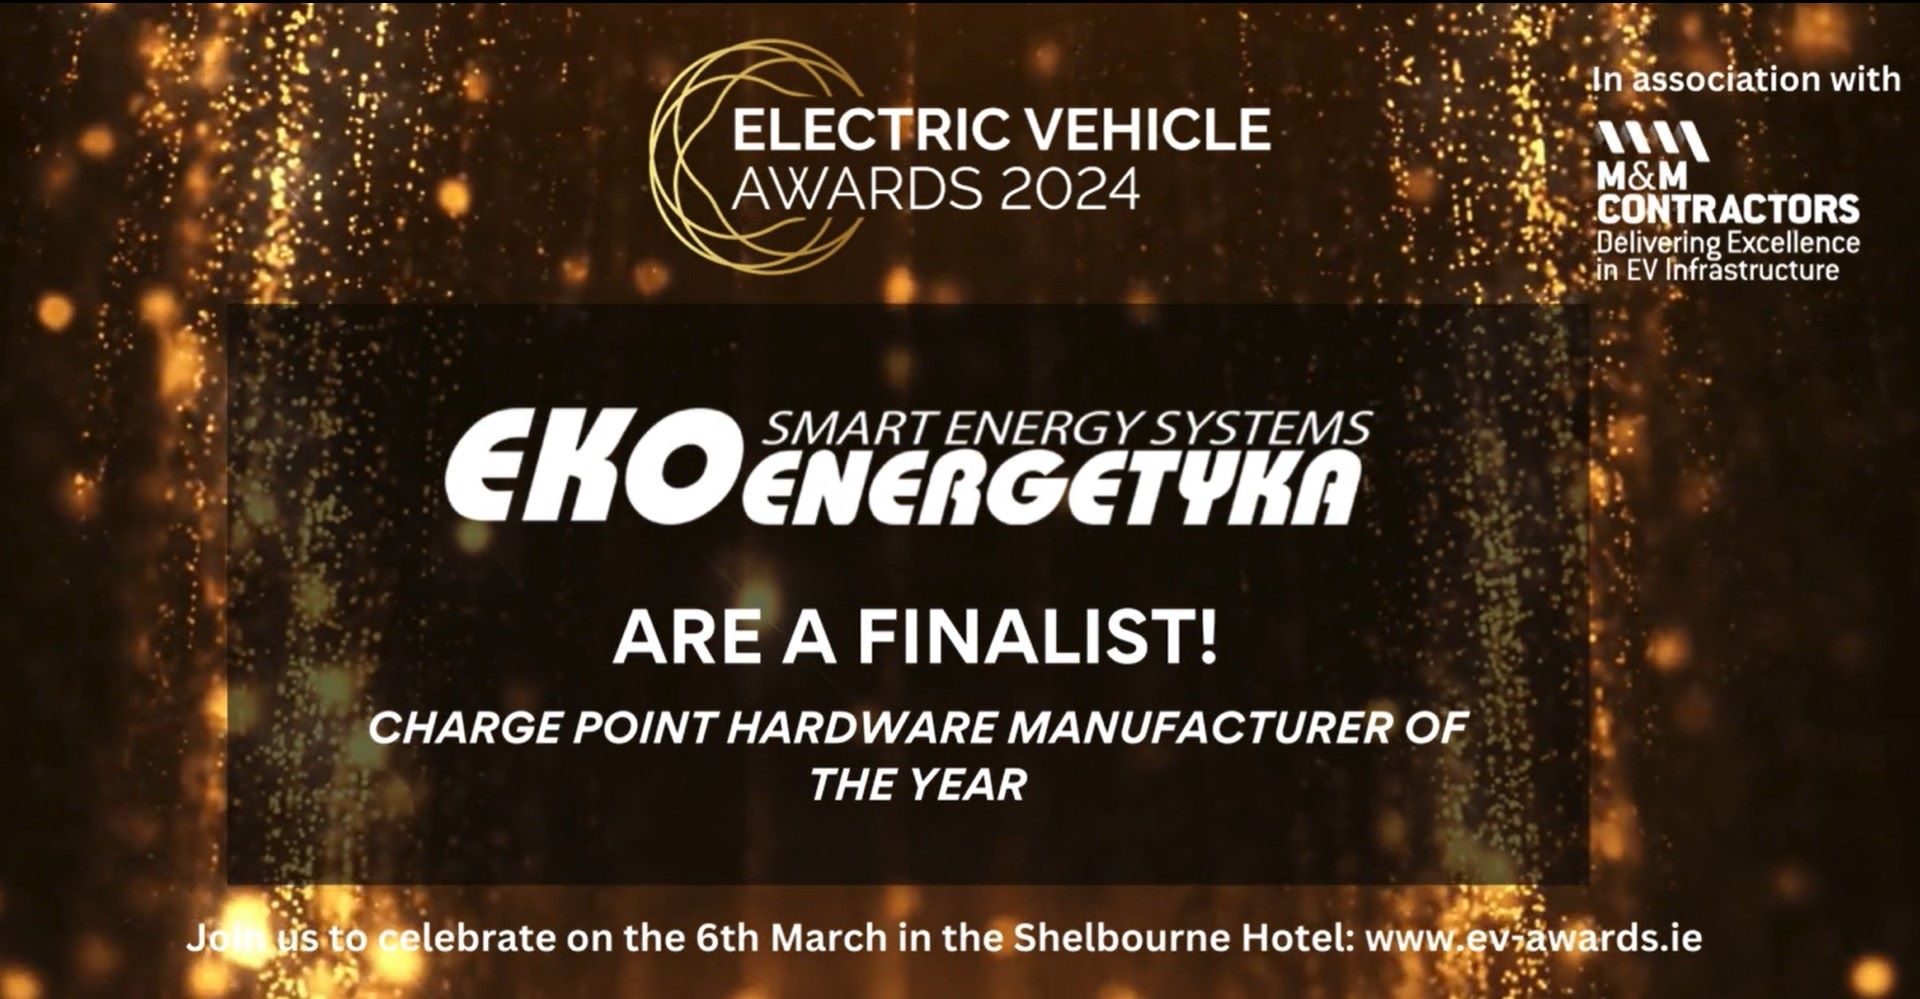 Ekoenergetyka z 2 nominacjami w plebiscycie EV Awards 2024 w Irlandii